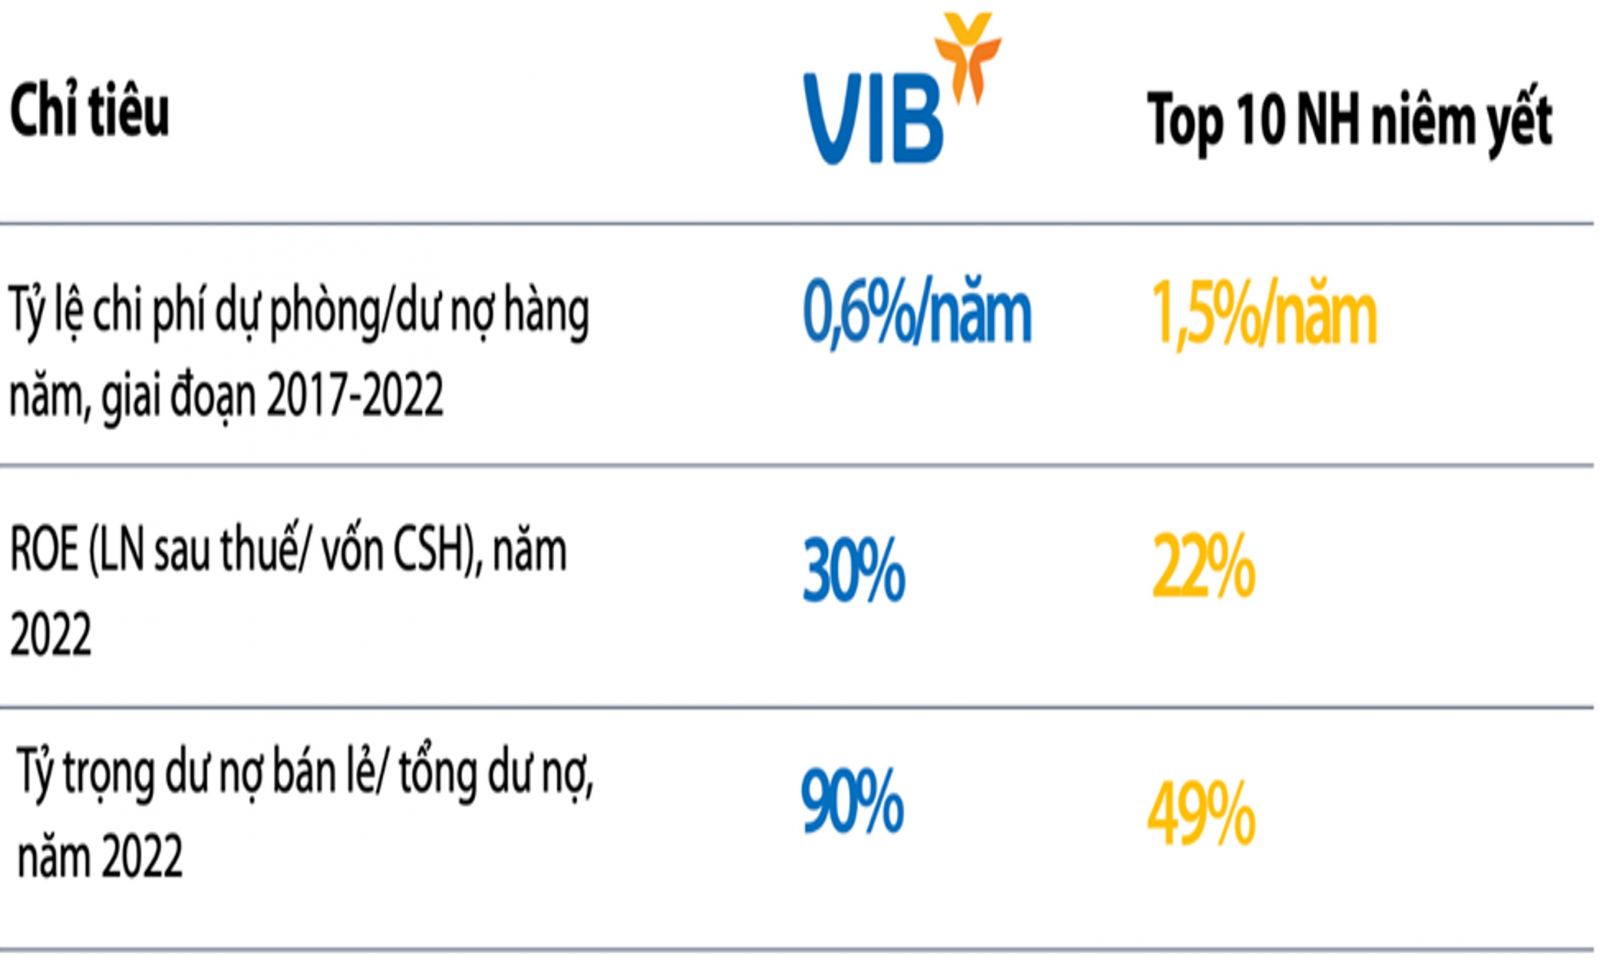  Hiệu quả kinh doanh của VIB so với Top 10 ngân hàng niêm yết, 2017-2022  Nguồn: Finpro, BCTC các ngân hàng